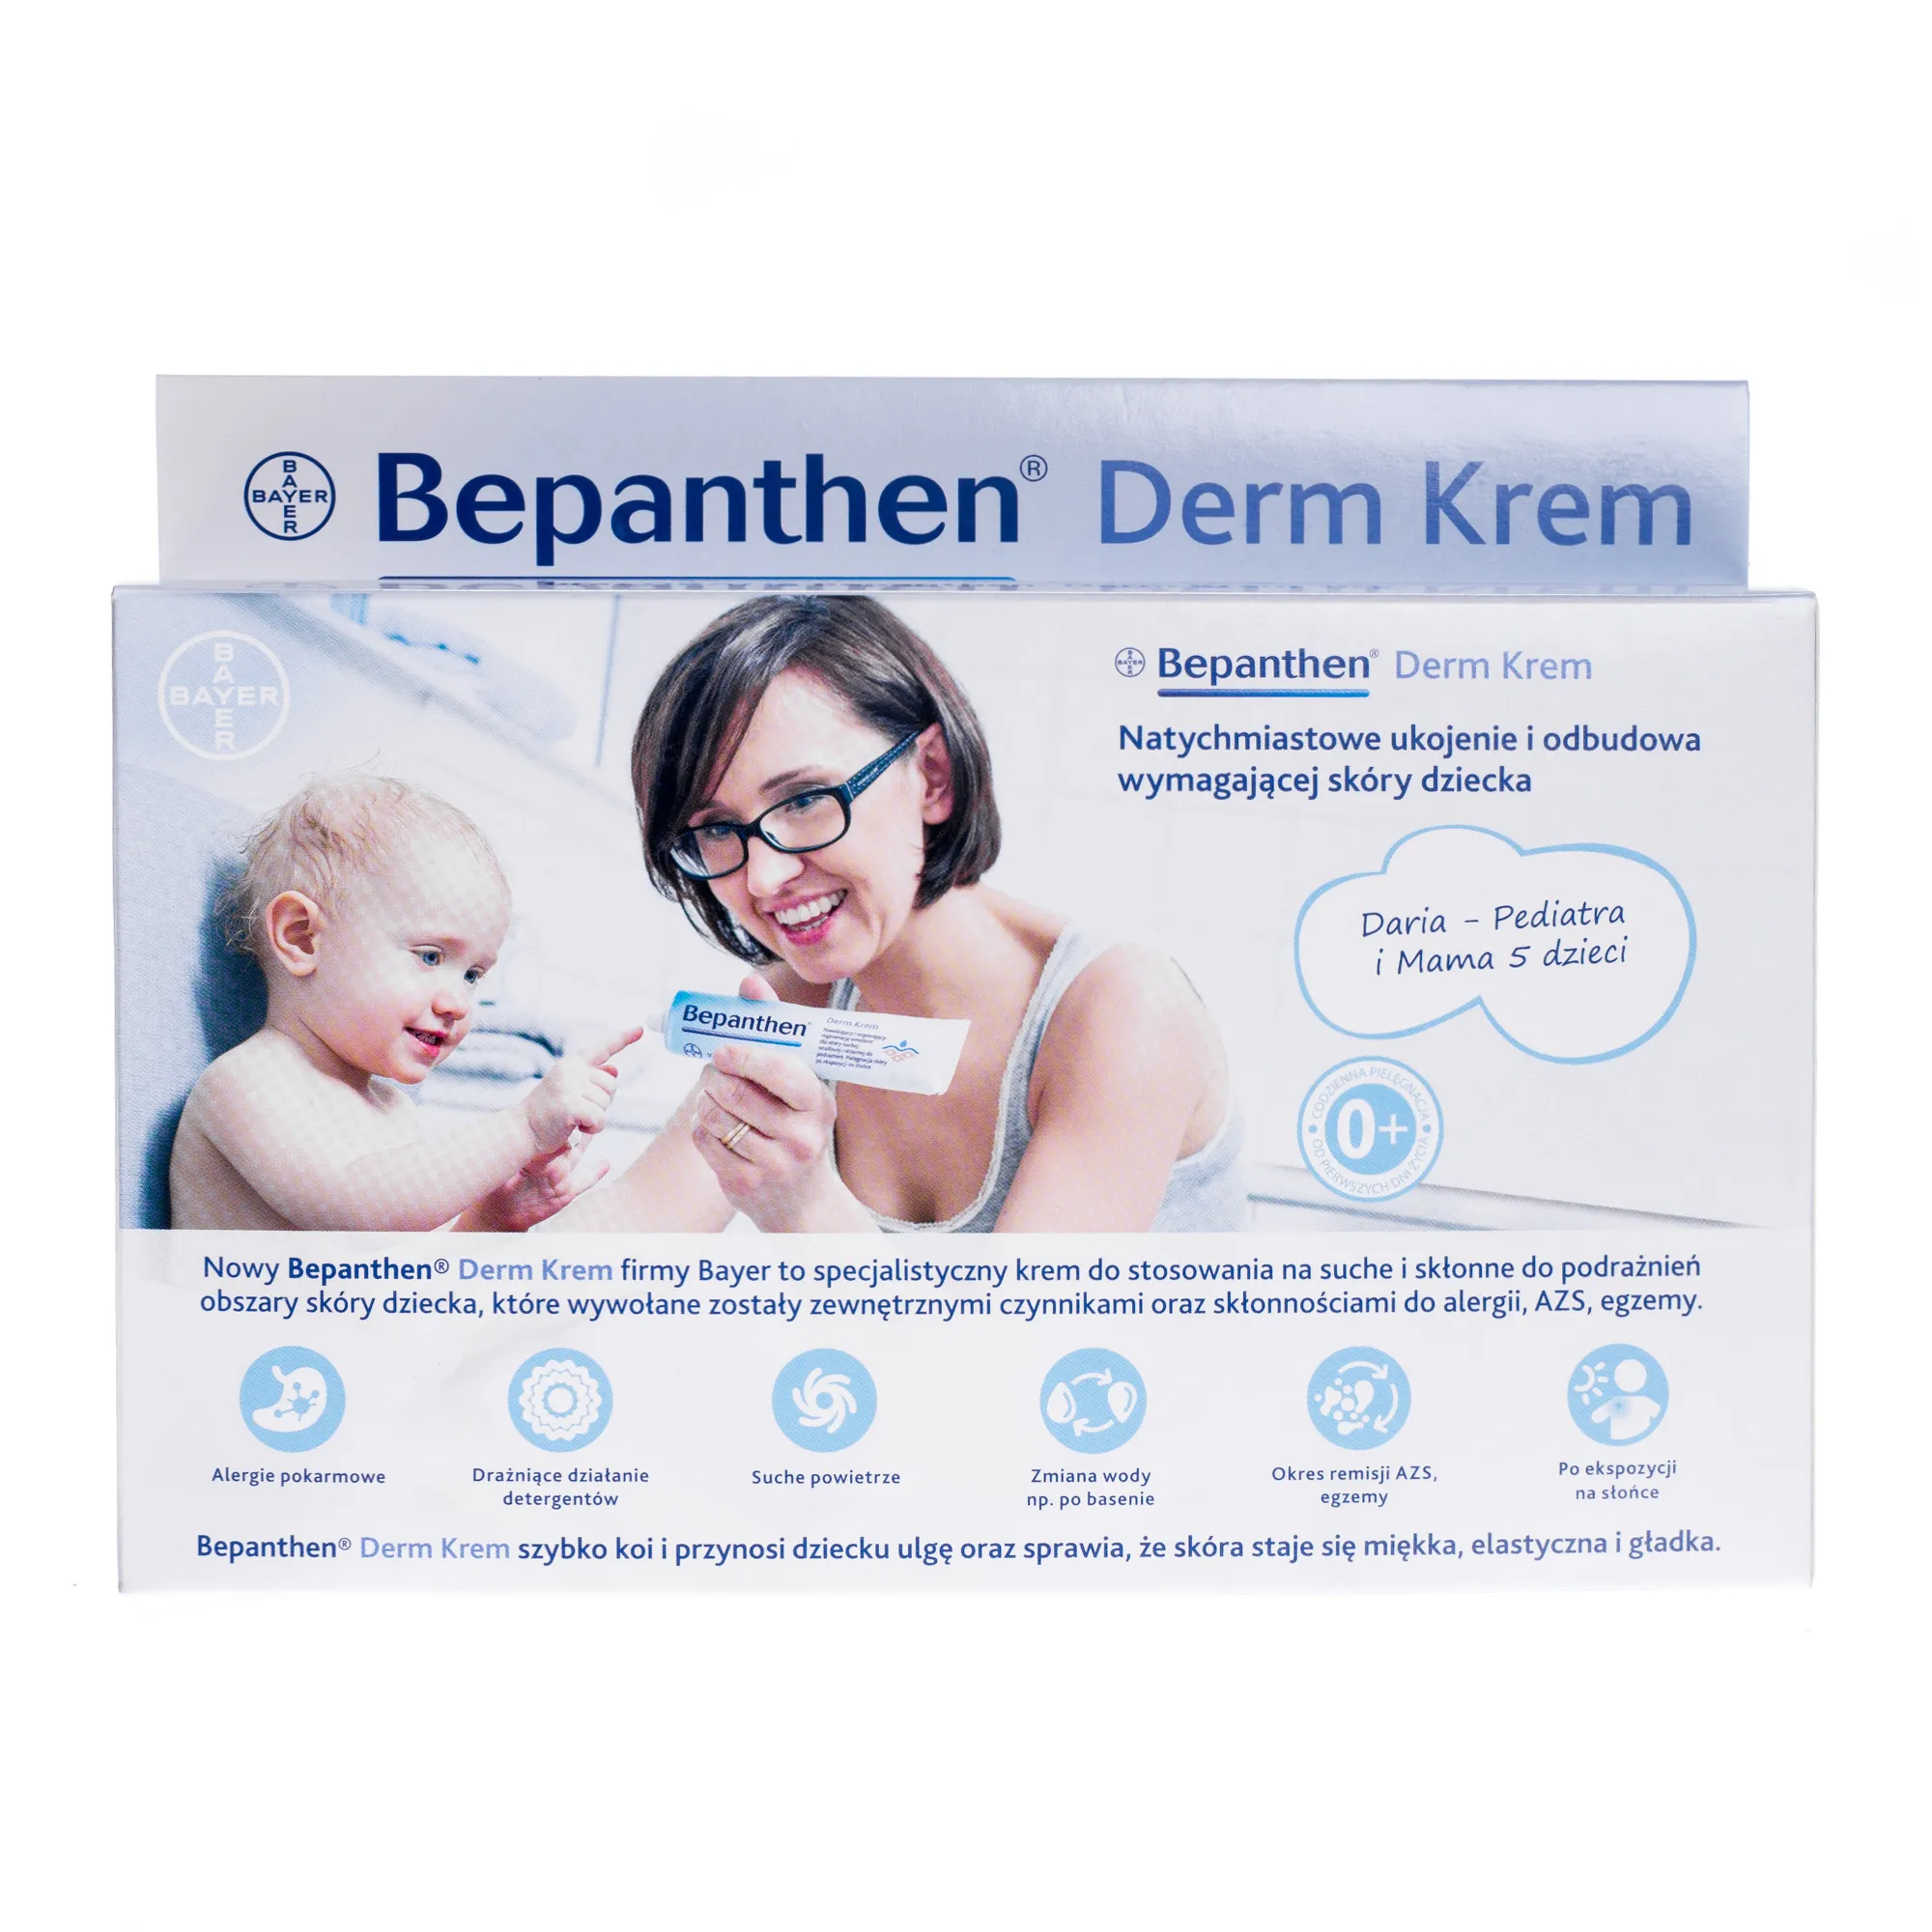 Bepanthen Derm Krem, zestaw promocyjny, 100 g + 30 g gratis 